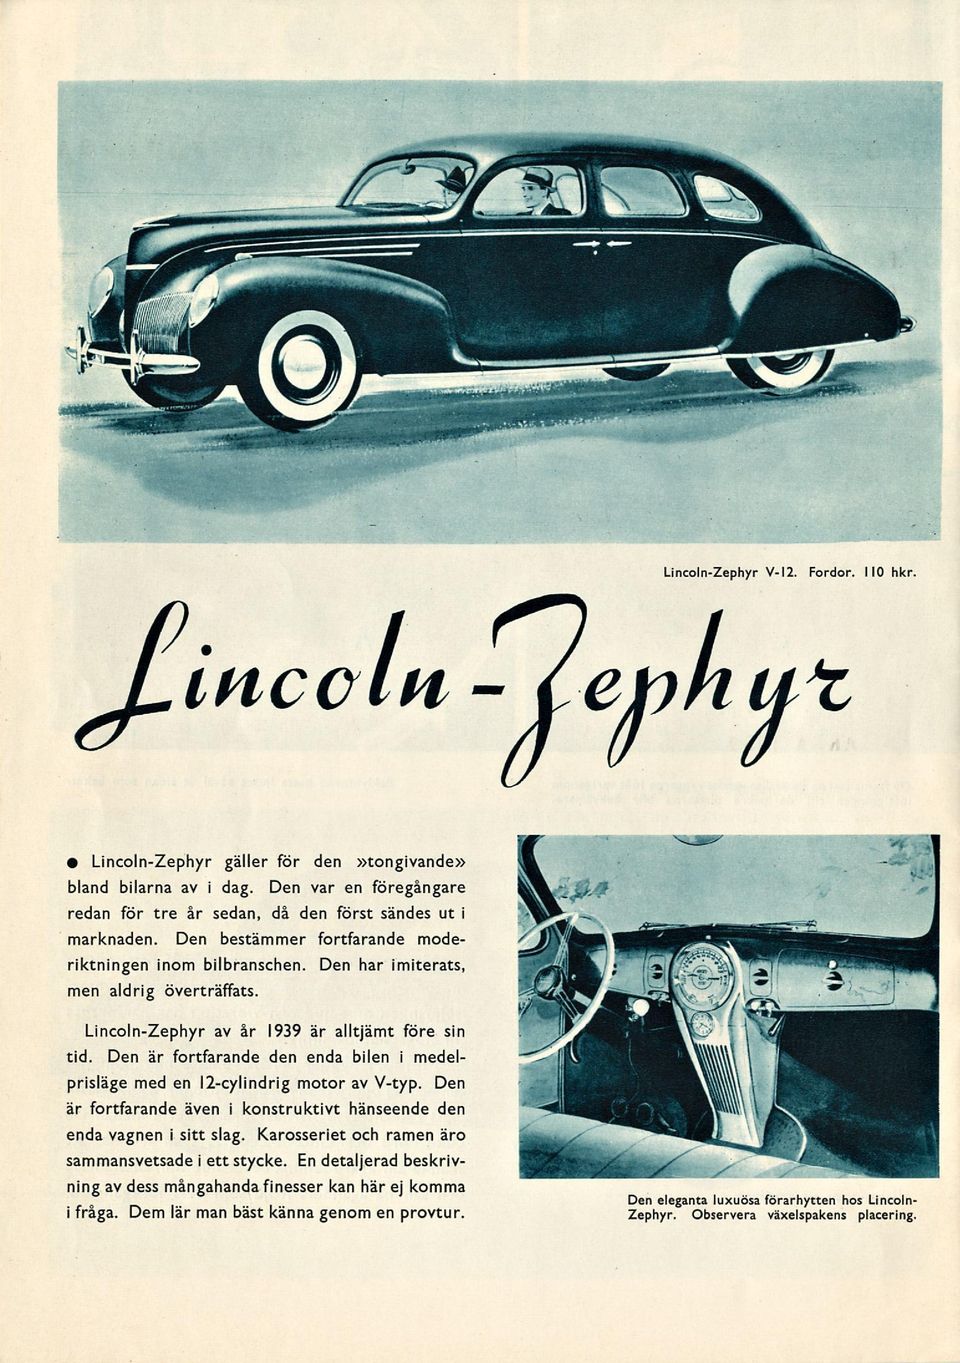 Lincoln-Zephyr av år 1939 är alltjämt före sin tid. Den är fortfarande den enda bilen i medelprisläge med en 12-cylindrig motor av V-typ.